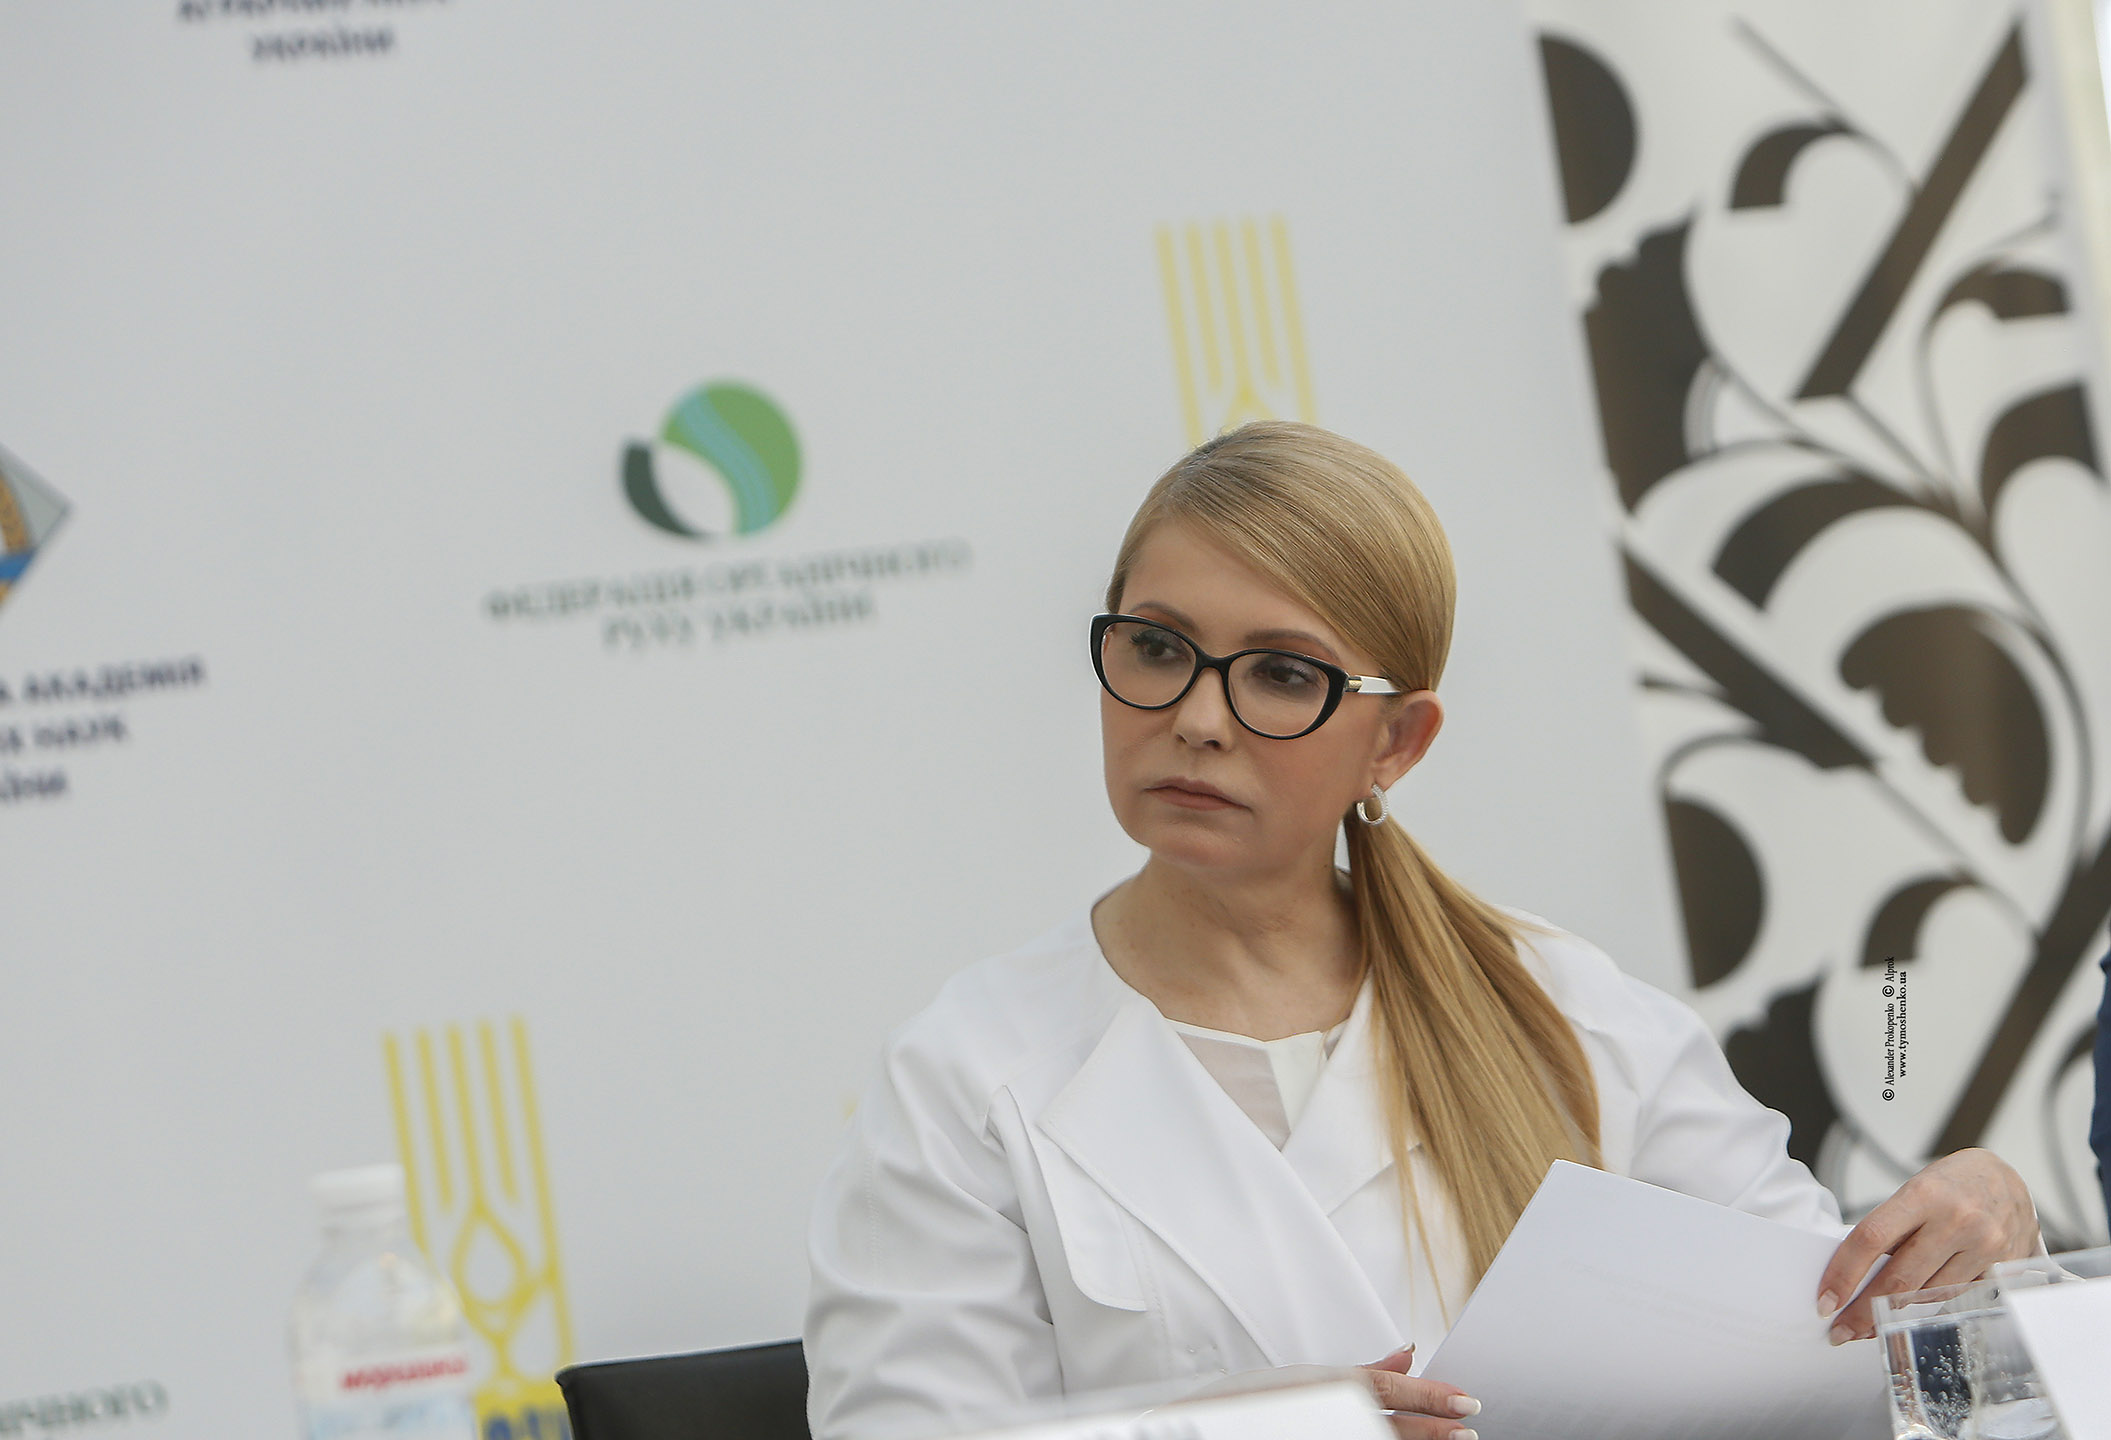 Юлія Тимошенко: Ми не дамо розпродати землю!